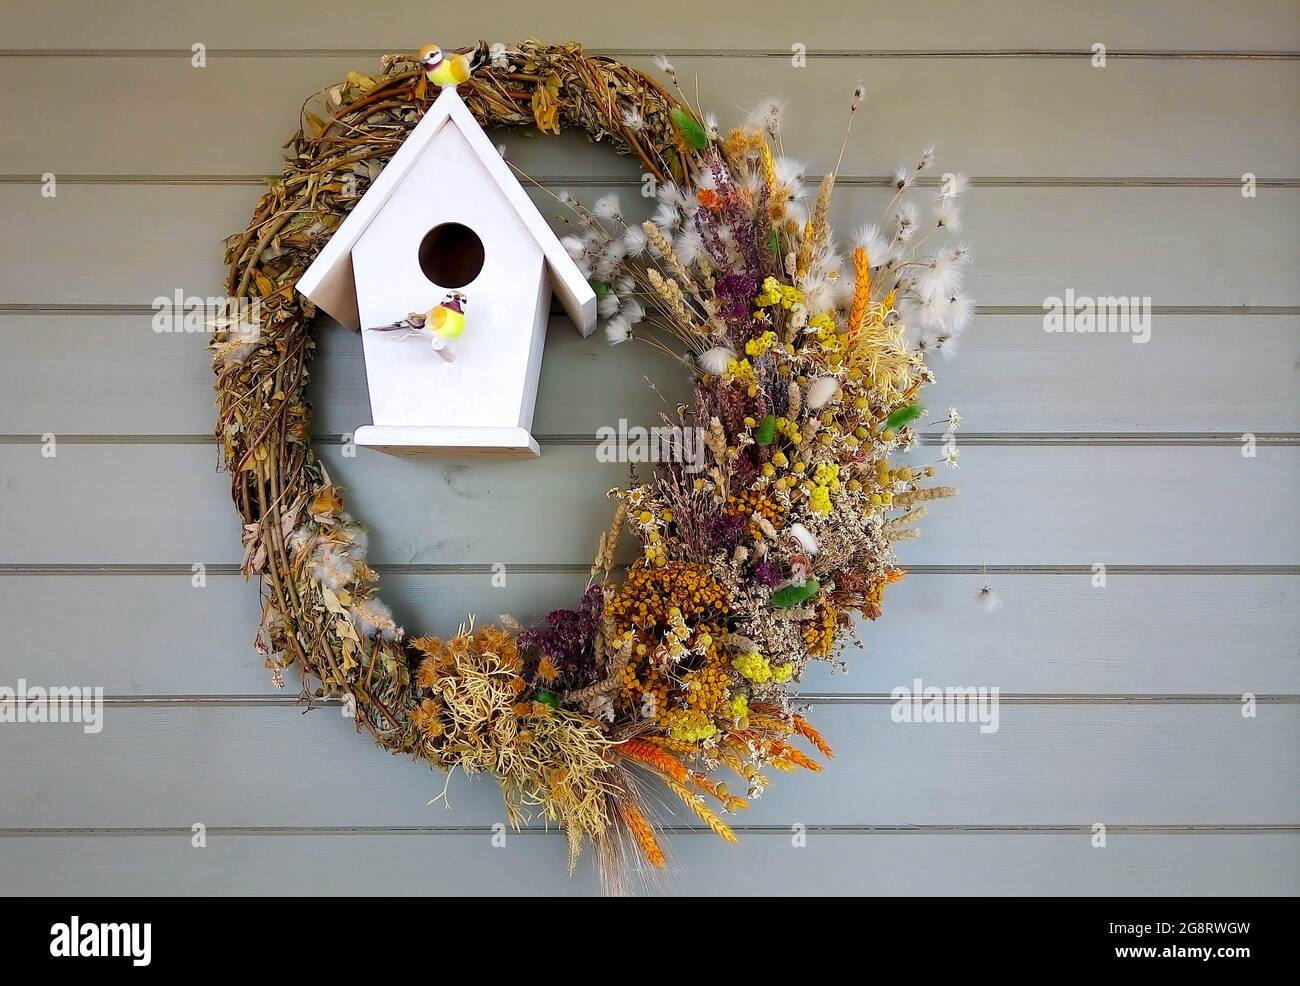 An der Hauswand hängt ein Vogelhaus mit künstlichen Vögeln, die mit einem  Kranz aus getrockneten Kräutern geschmückt sind Stockfotografie - Alamy